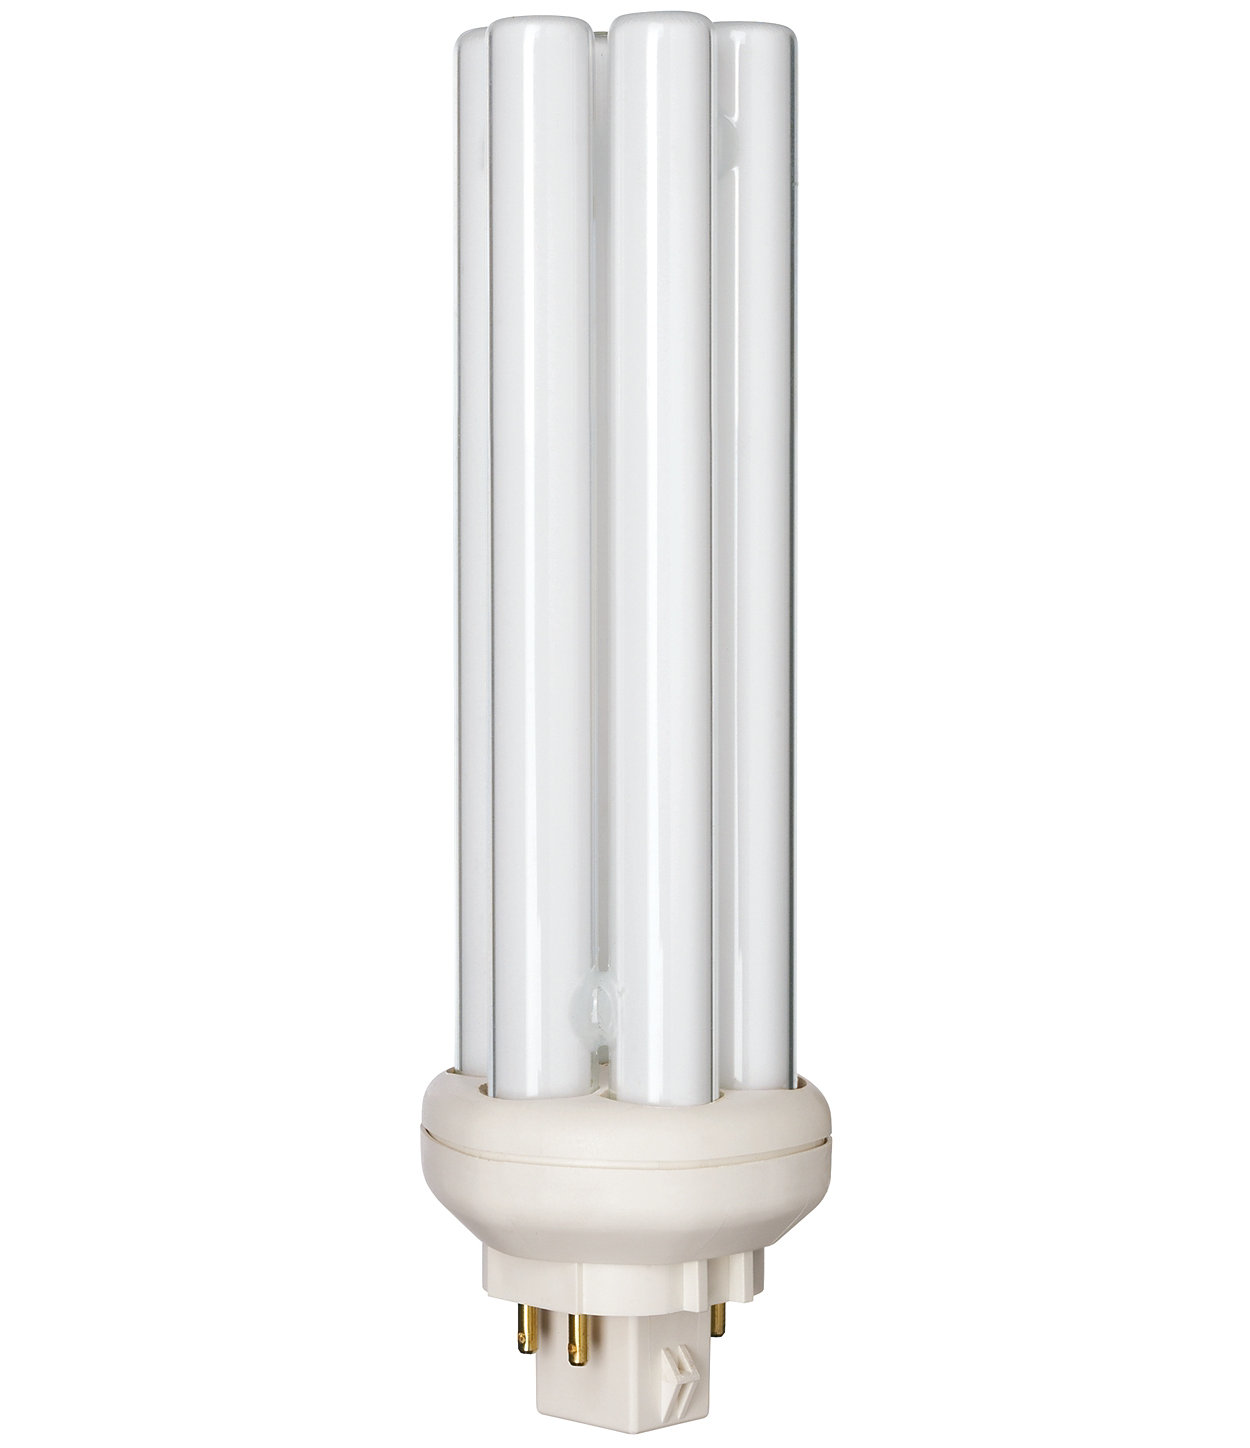 5 x 15 watt fluorescent tube 450mm long 18 inch 18" T8 26mm white 3500k 20,000hr 